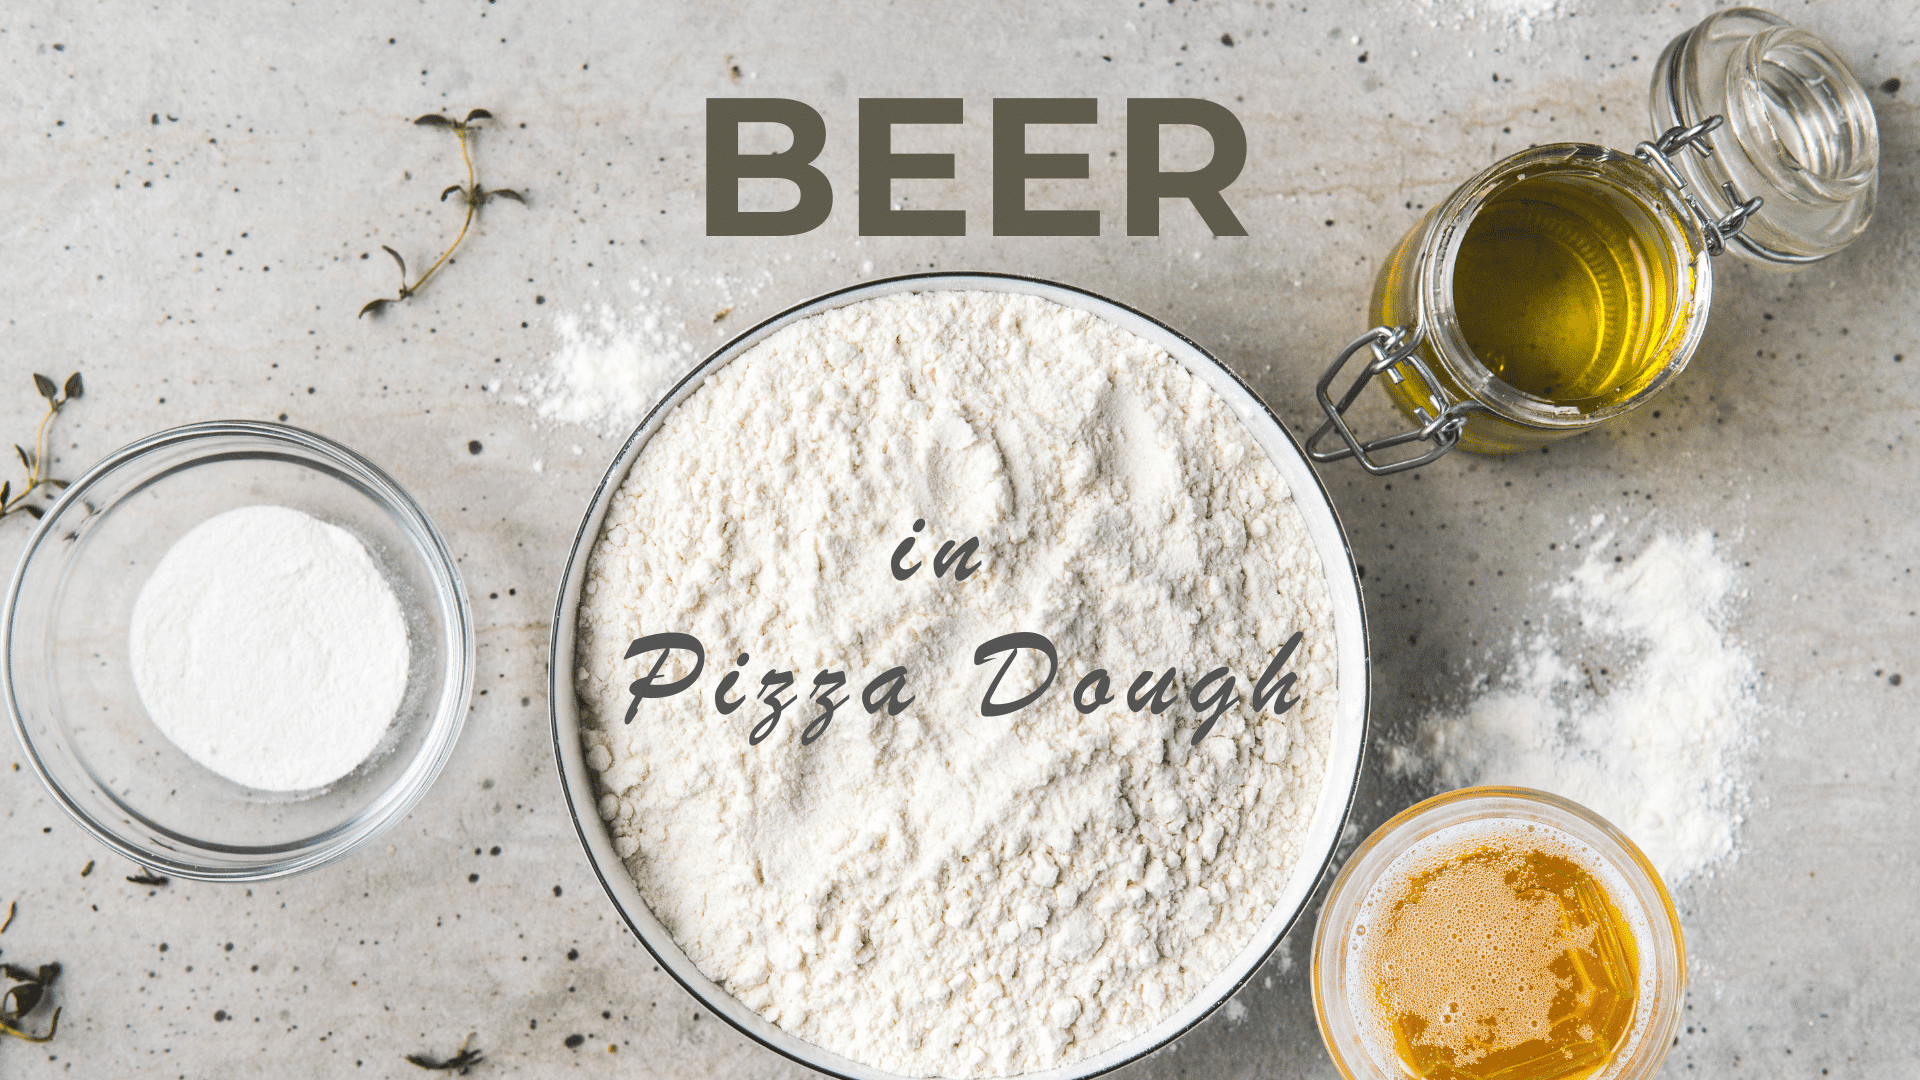 Beer in pizza dough